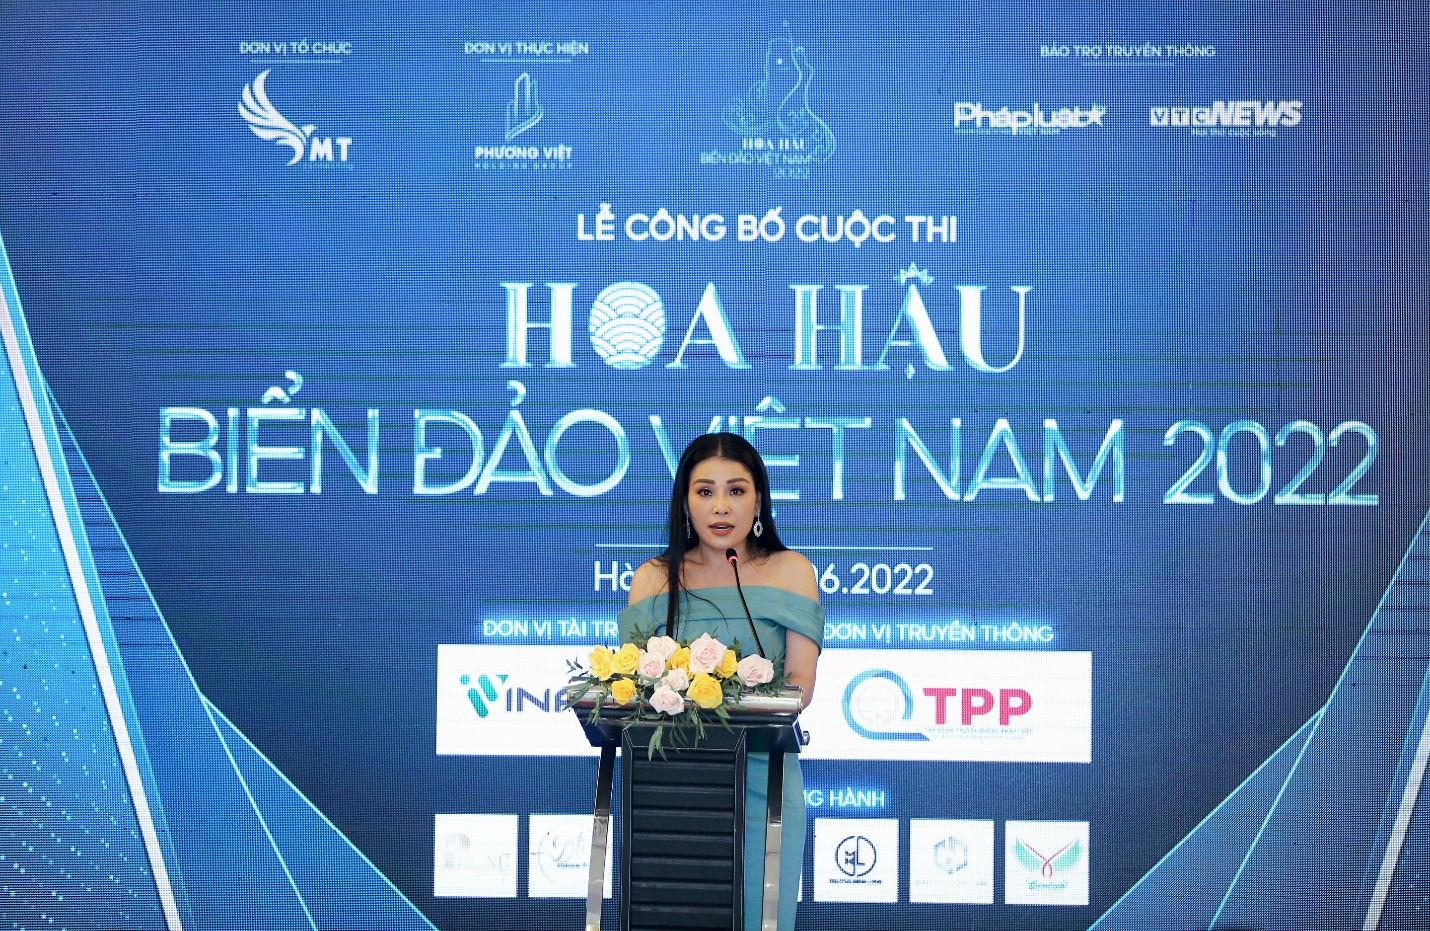 Hoa hậu Biển Đảo Việt Nam 2022: Trưởng ban tổ chức Đàm Hương Thủy và những tâm huyết dành cho chương trình - ảnh 1